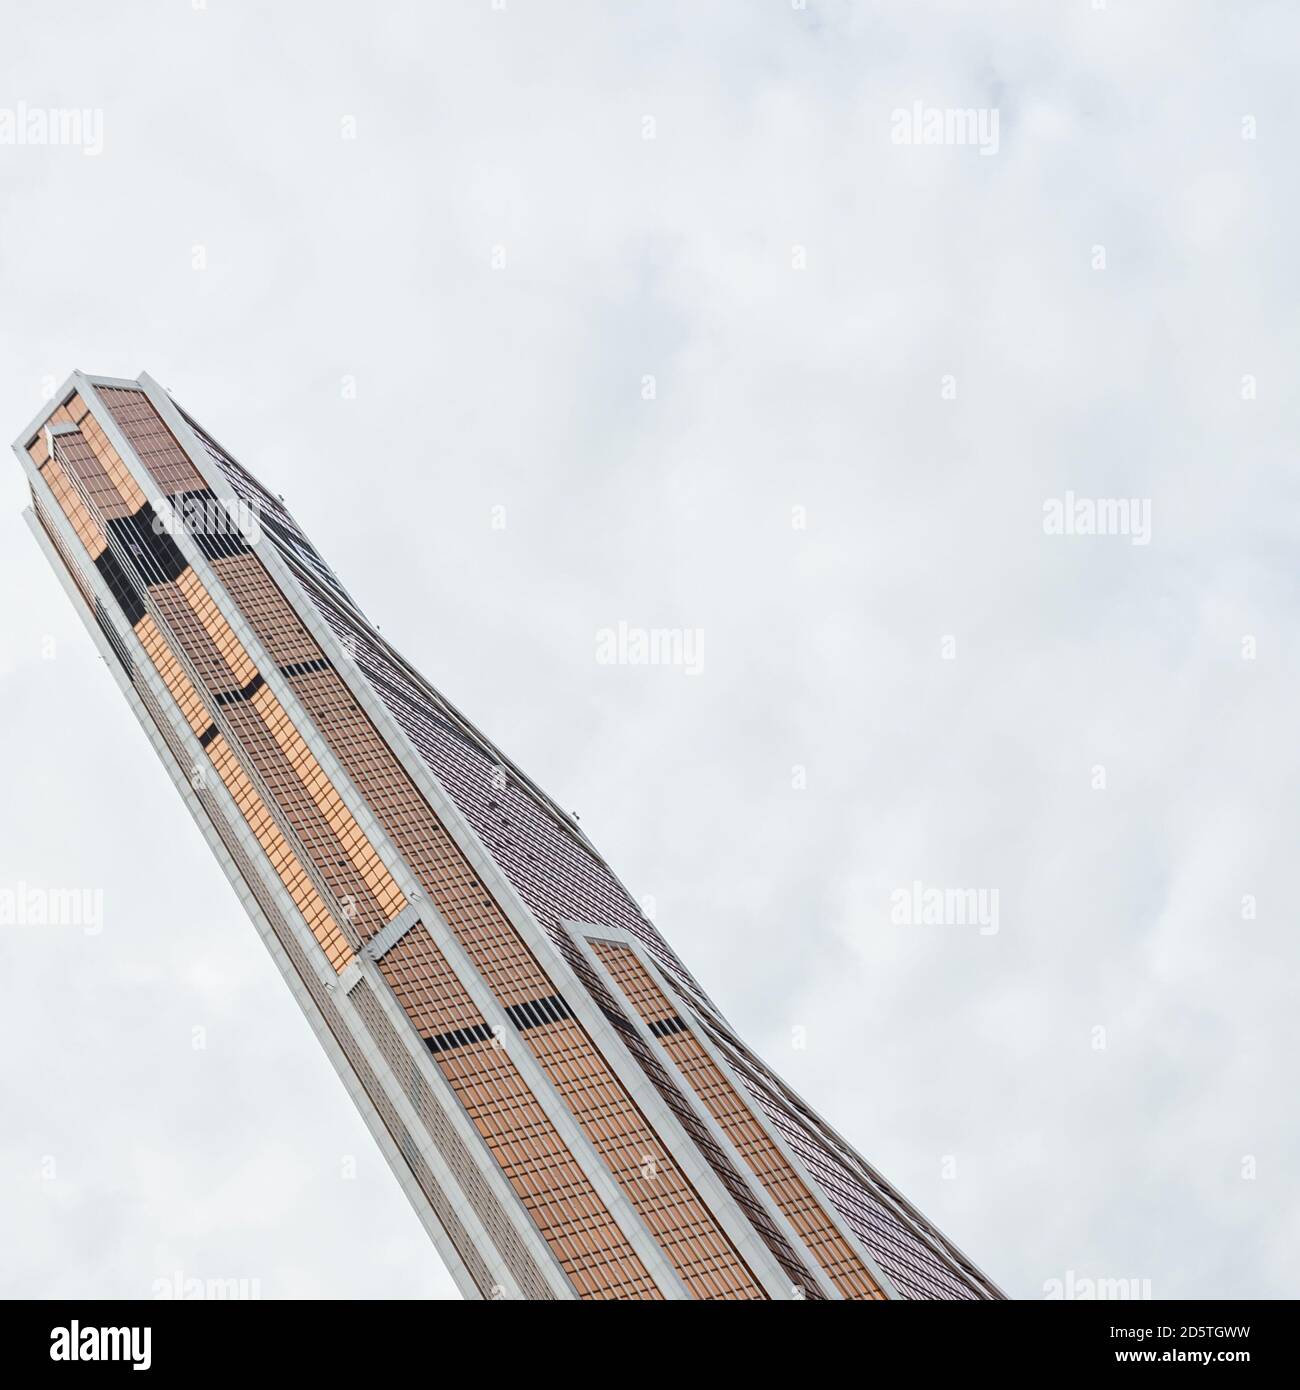 08 19 2020 Moskau, Russland. Die Spitzen der Wolkenkratzer Moskau-Stadt Stockfoto